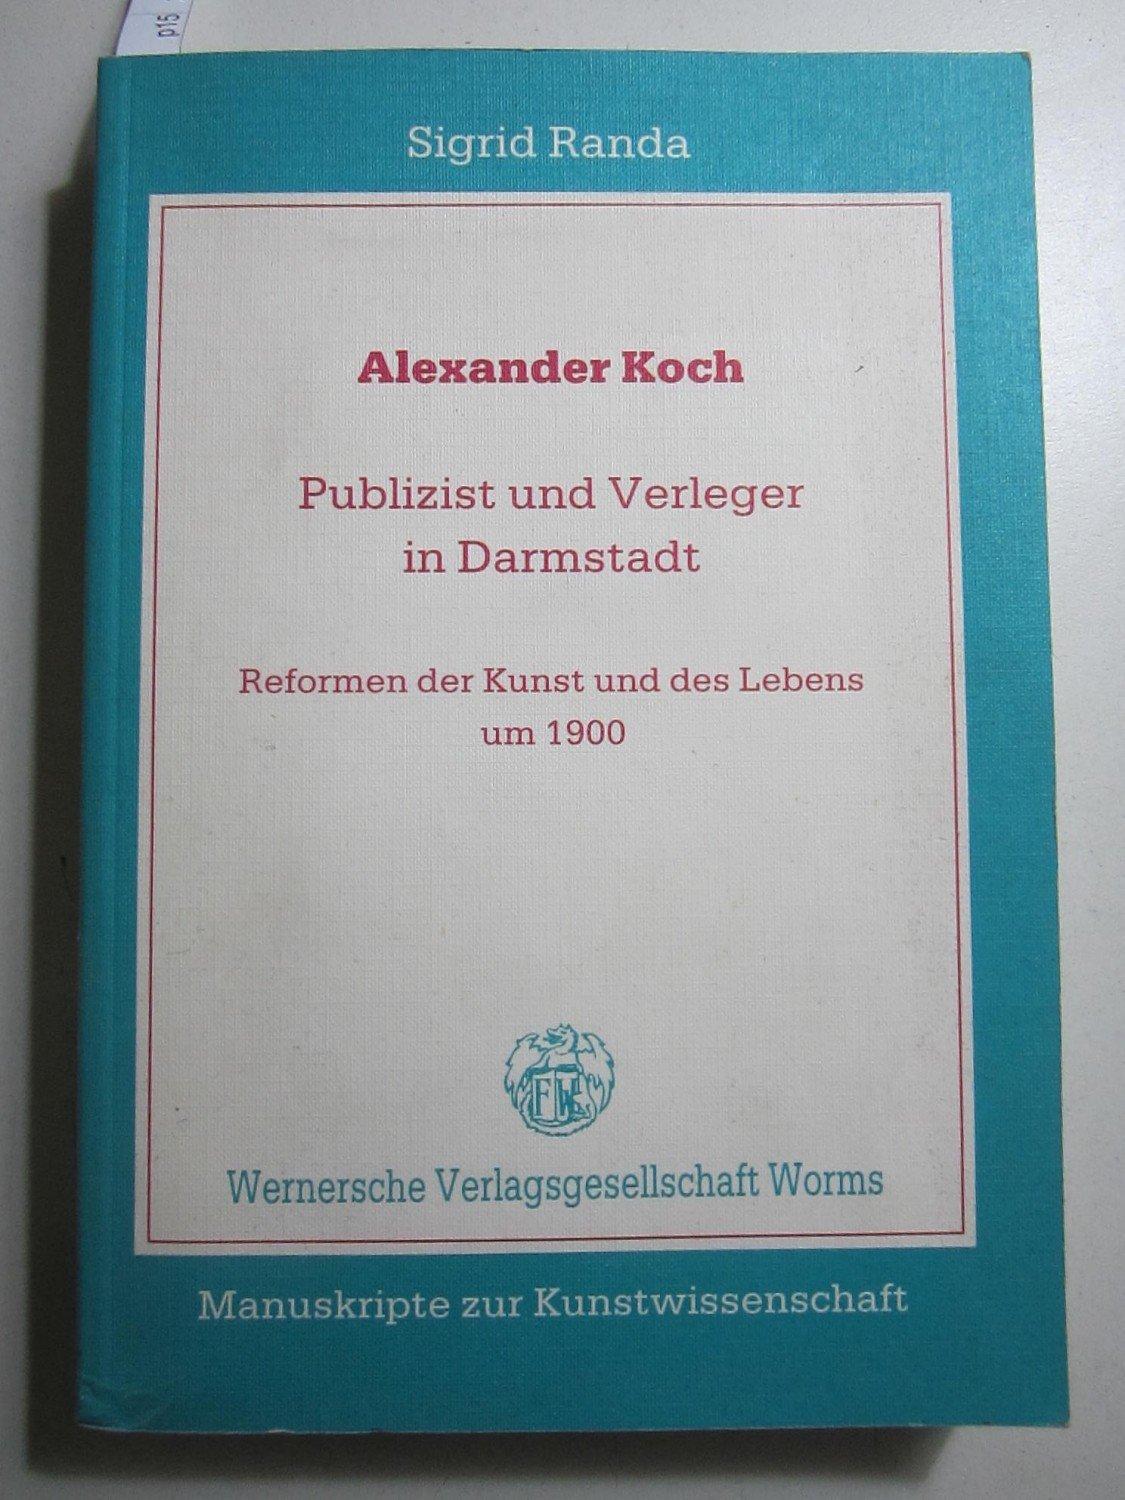 Alexander Koch - Publizist und Verleger in Darmstadt - Reform der Kunst und des Lebens um 1900. (Manuskripte zur Kunstwissenschaft) - Randa, Sigrid